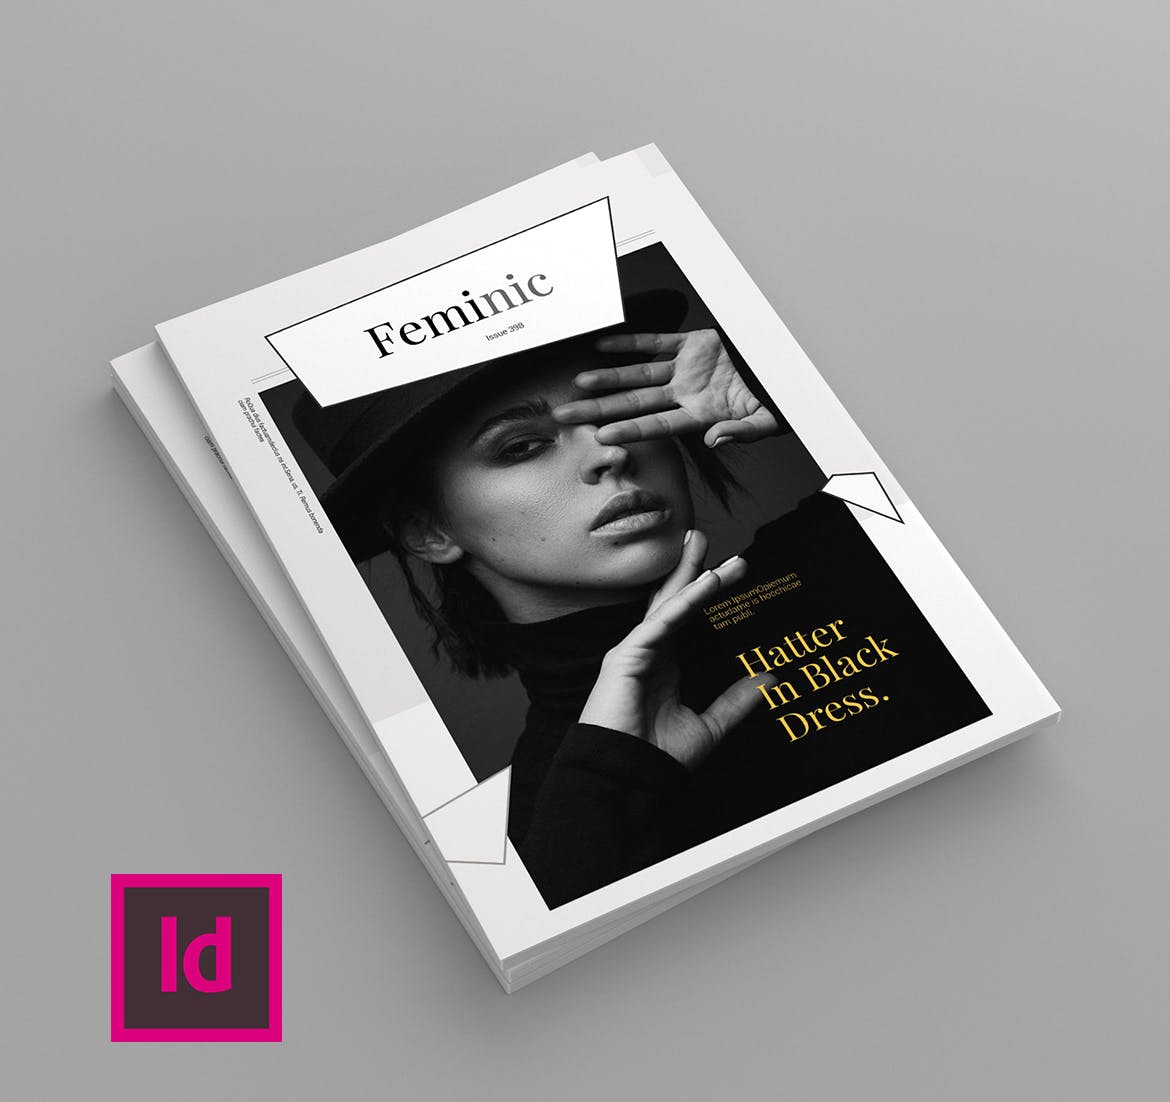 高端简约排版风格女性主题杂志设计模板 Feminic – Magazine Template插图(1)